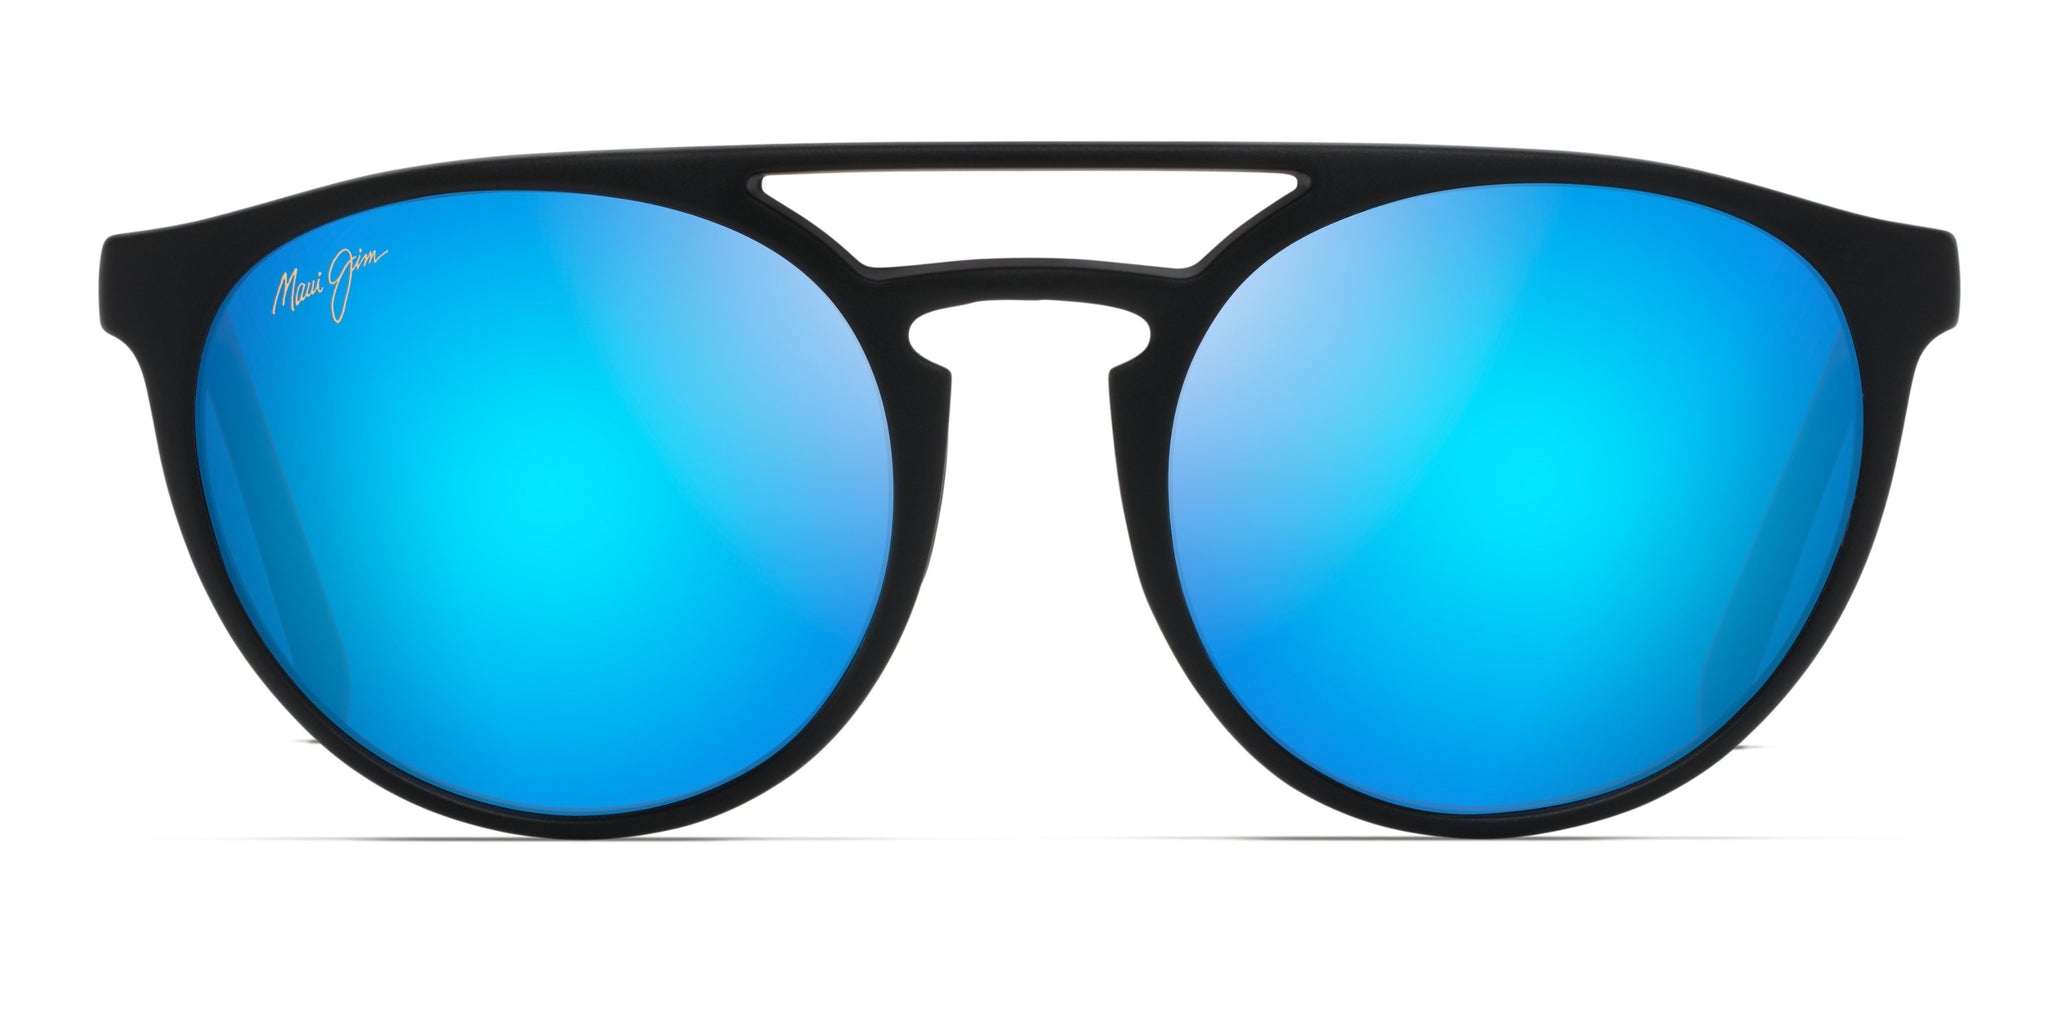 Maui Jim Ah Dang! 781 Sunglasses: Models P781-12C, B781-2M, H781-10,  781-11MS - Flight Sunglasses